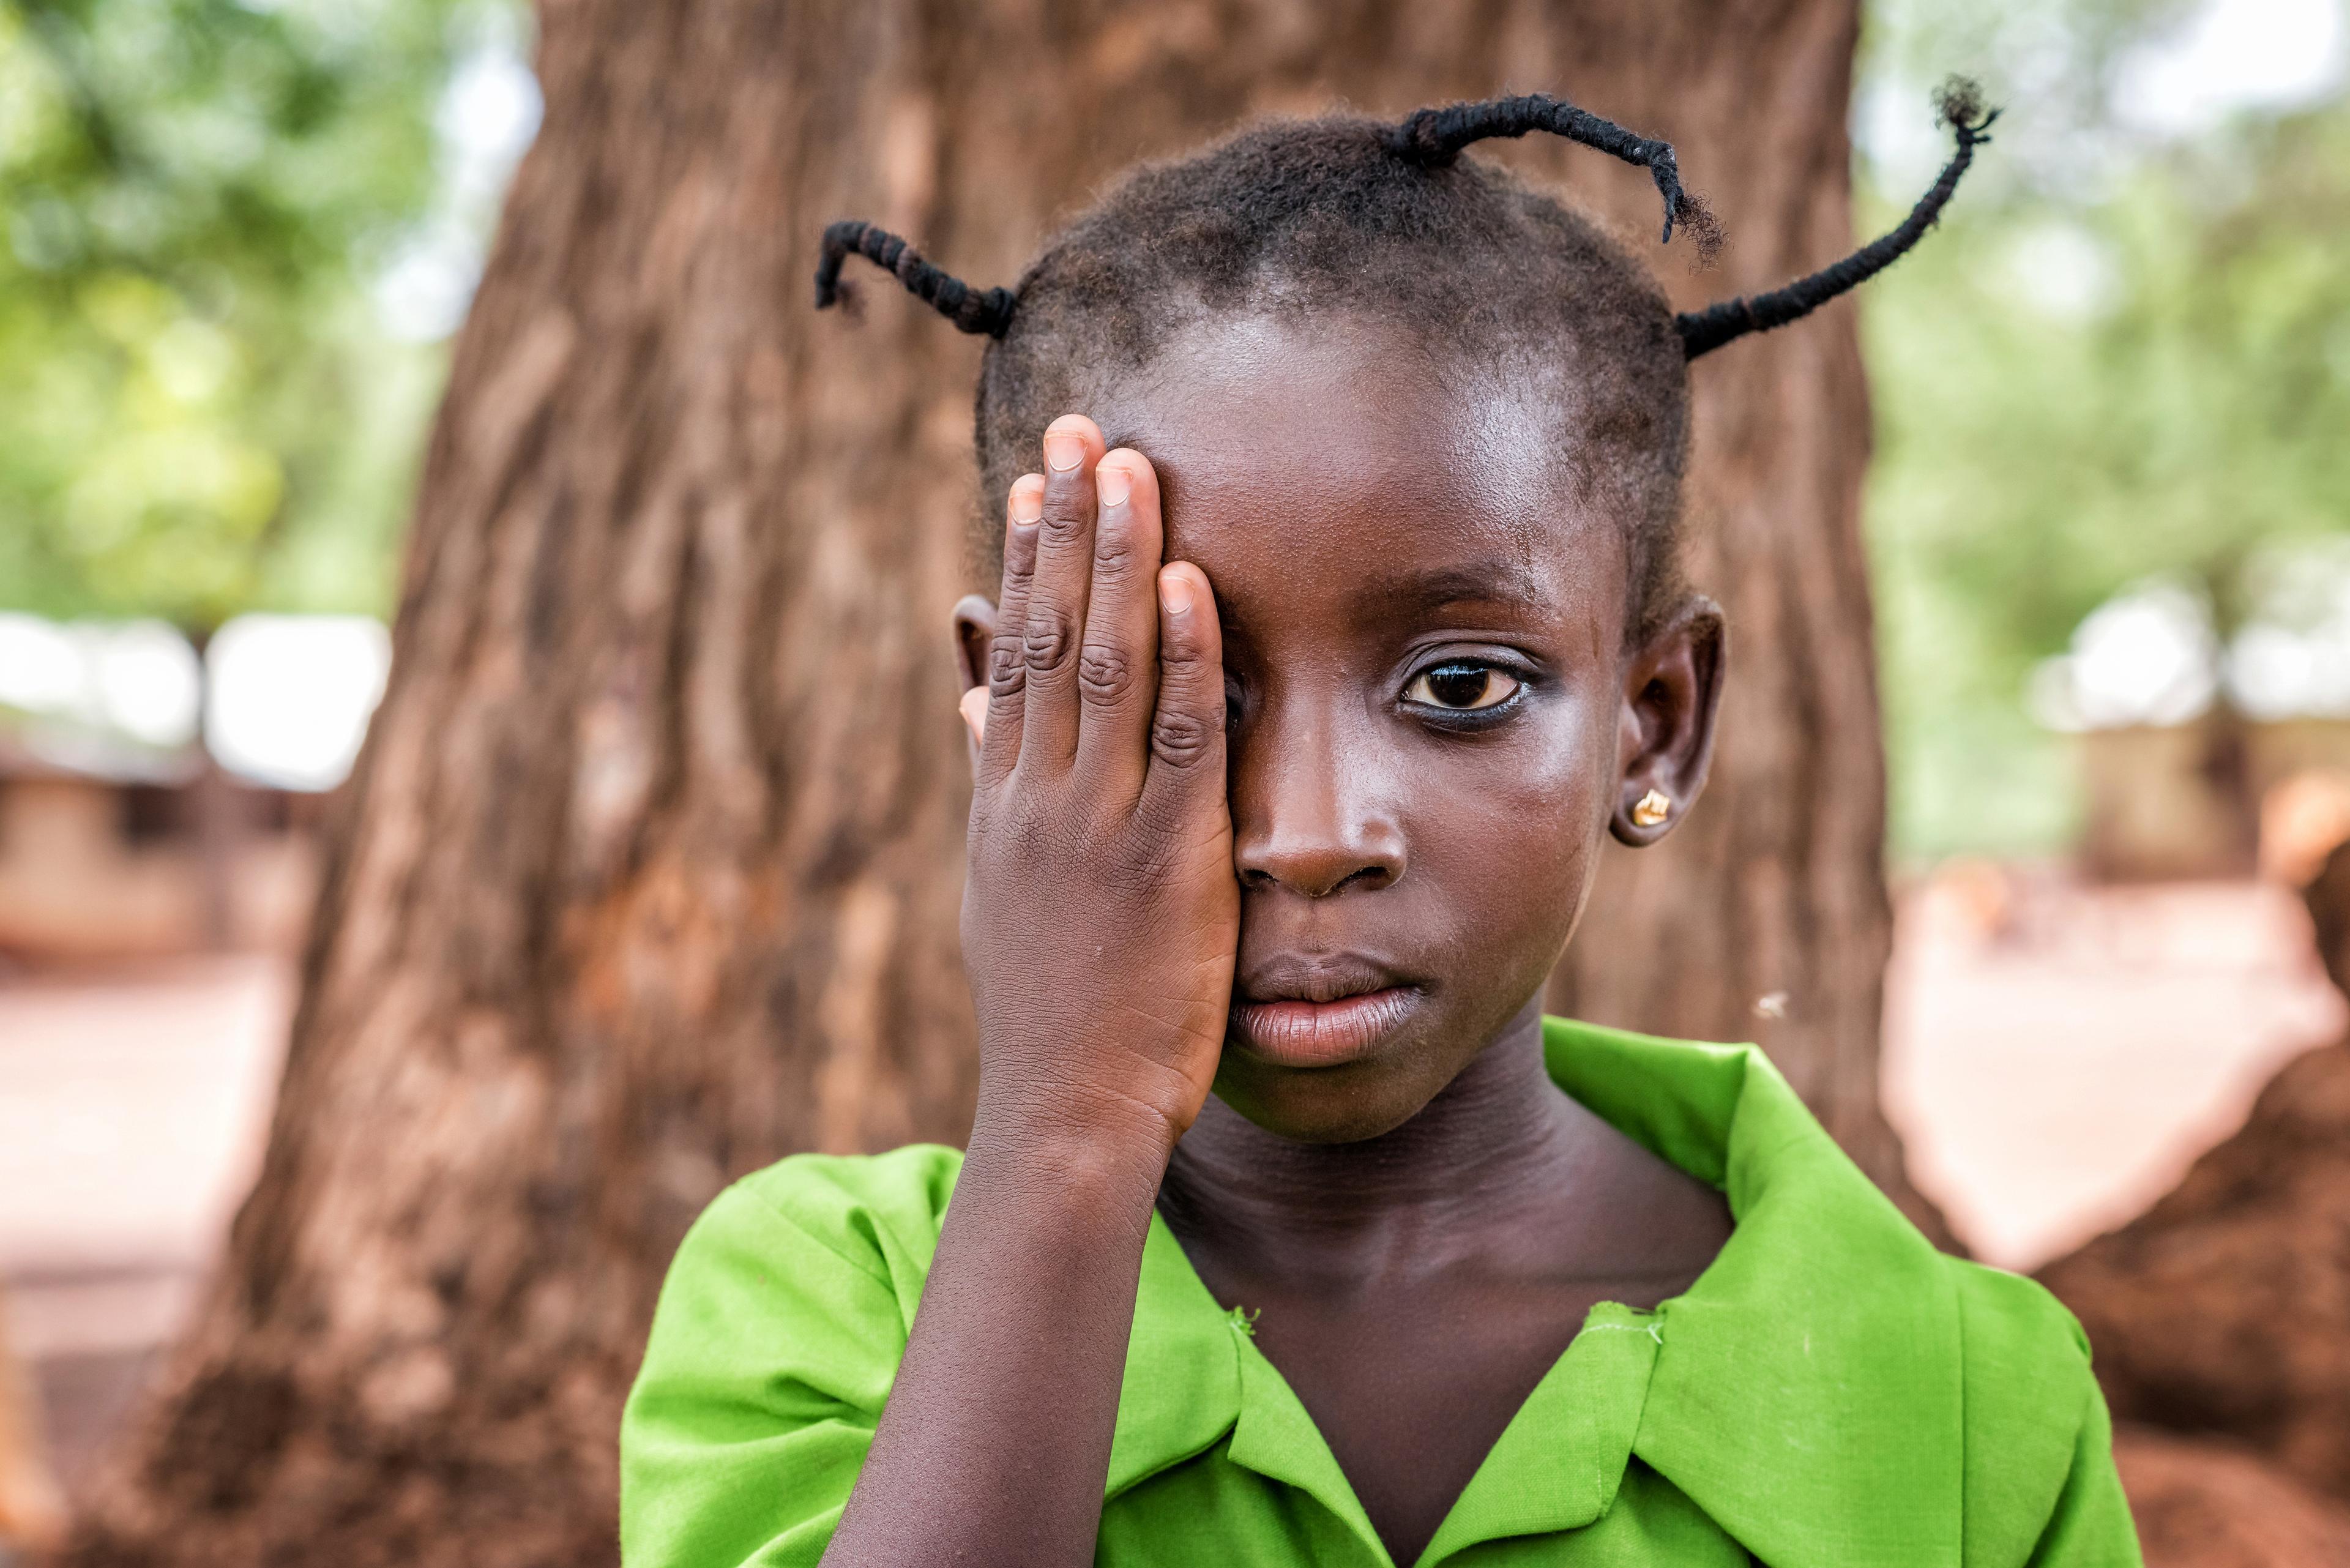 Asana, sei anni, durante un test oculistico in una scuola vicino a Tamale. Si trova davanti a un imponente tronco d'albero.